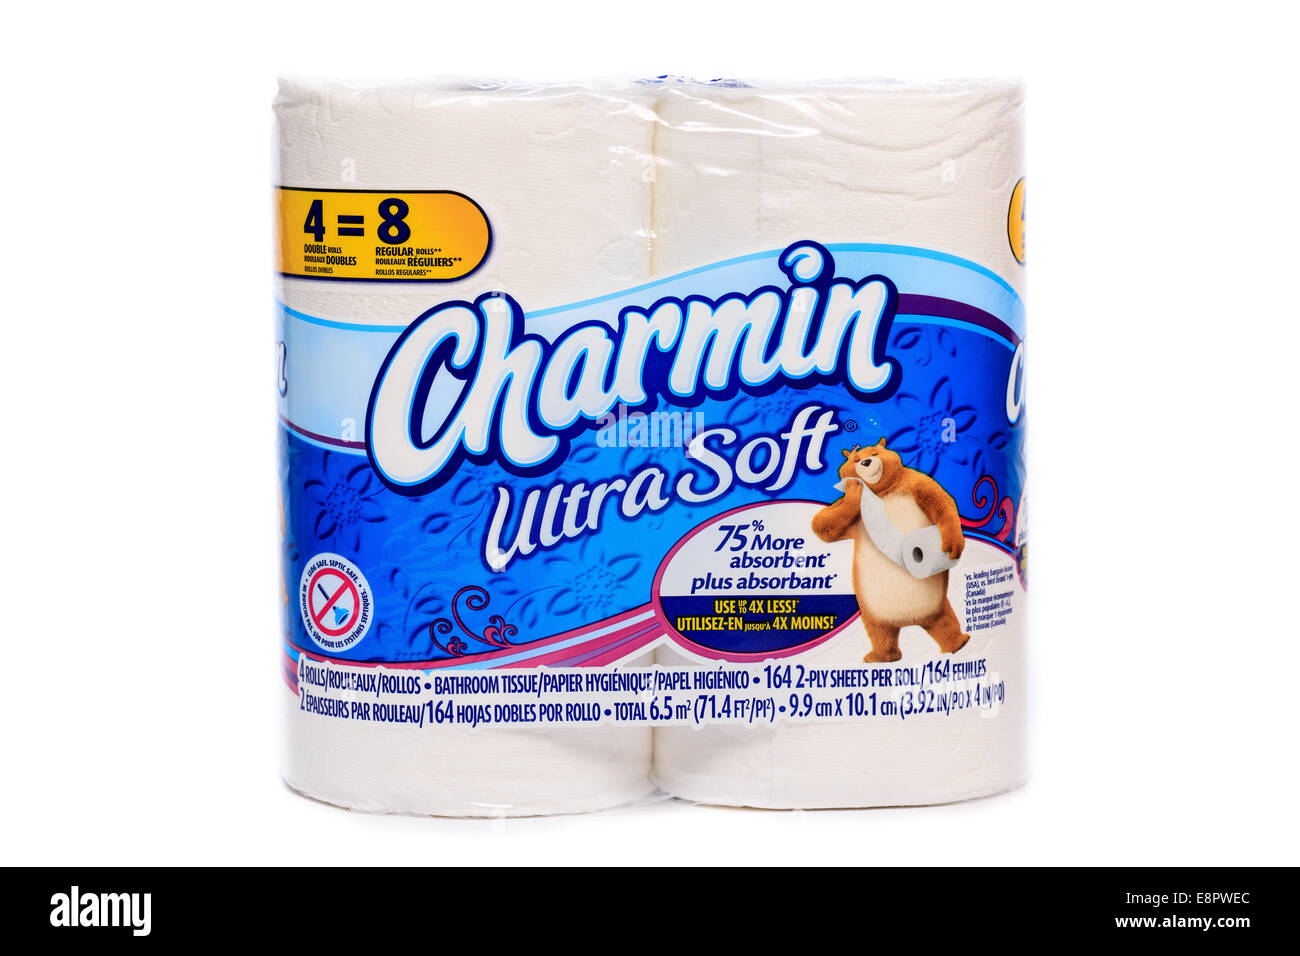 Real George Hanbury esférico Marca de Procter & Gamble Charmin Ultra Soft rollos de papel higiénico  Fotografía de stock - Alamy